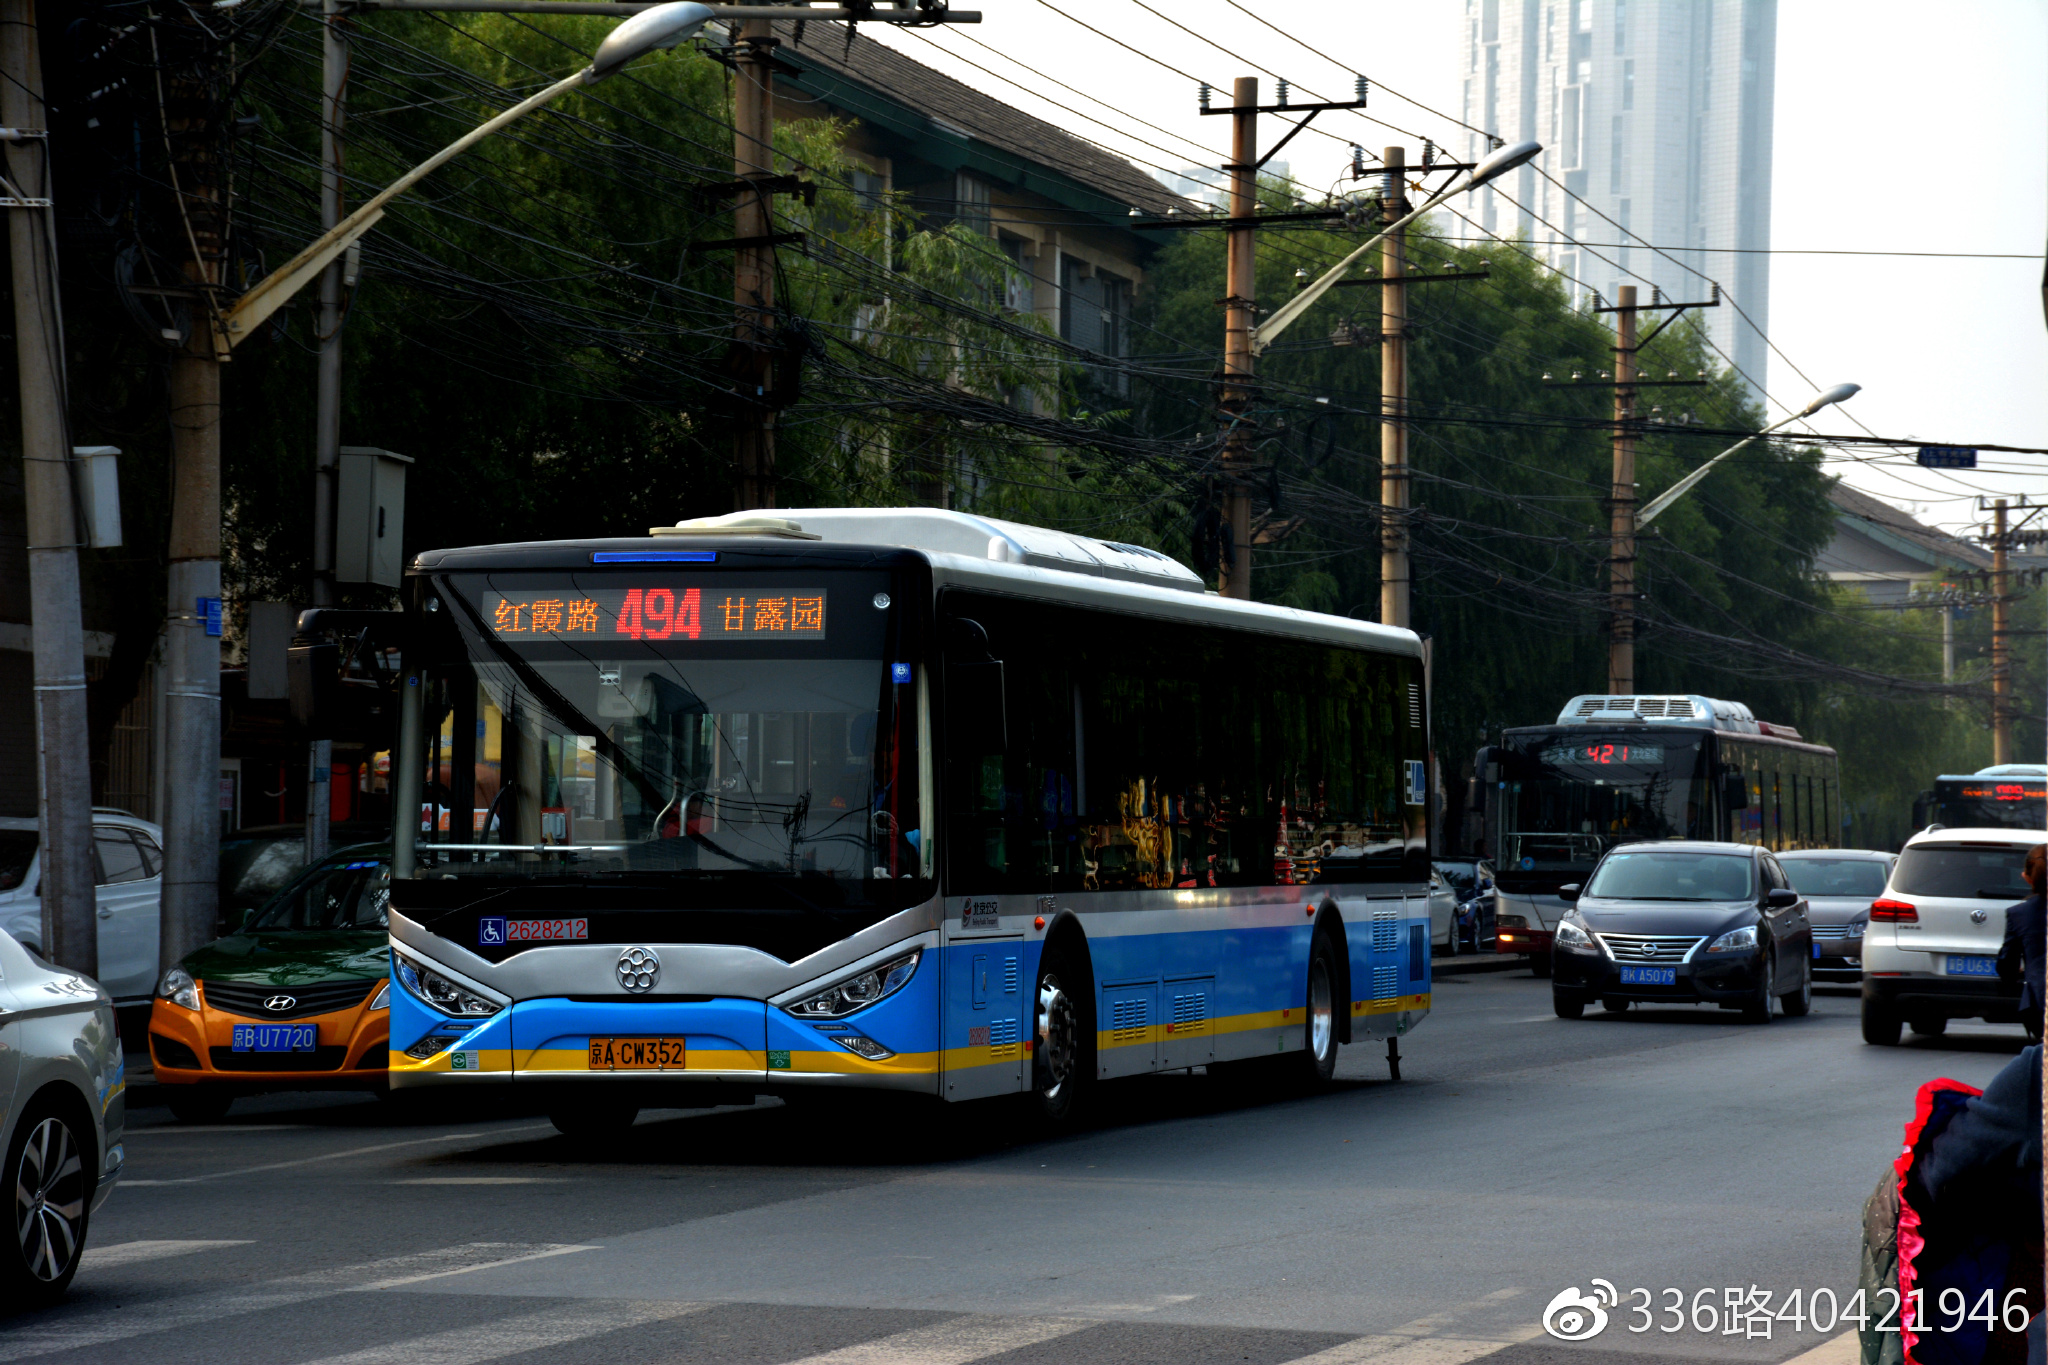 北京今年优化增设公交线路超百条，乘车更顺畅 | 北晚新视觉